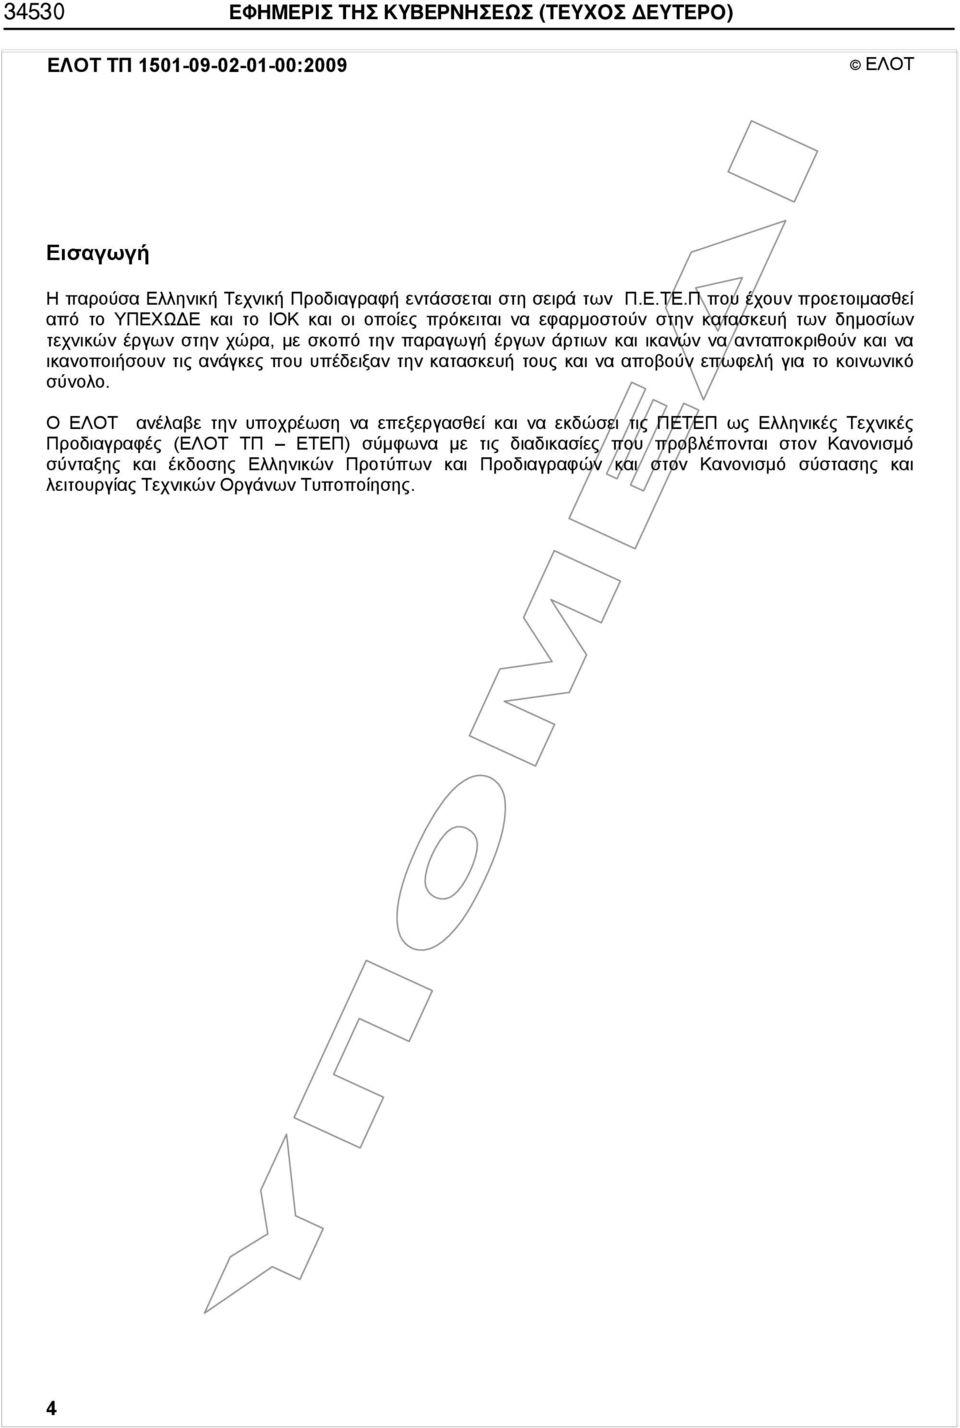 Ο) ΕΛΟΤ ΤΠ 1501-09-02-01-00:2009 ΕΛΟΤ Εισαγωγή Η παρούσα Ελληνική Τεχνική Προδιαγραφή εντάσσεται στη σειρά των Π.Ε.ΤΕ.